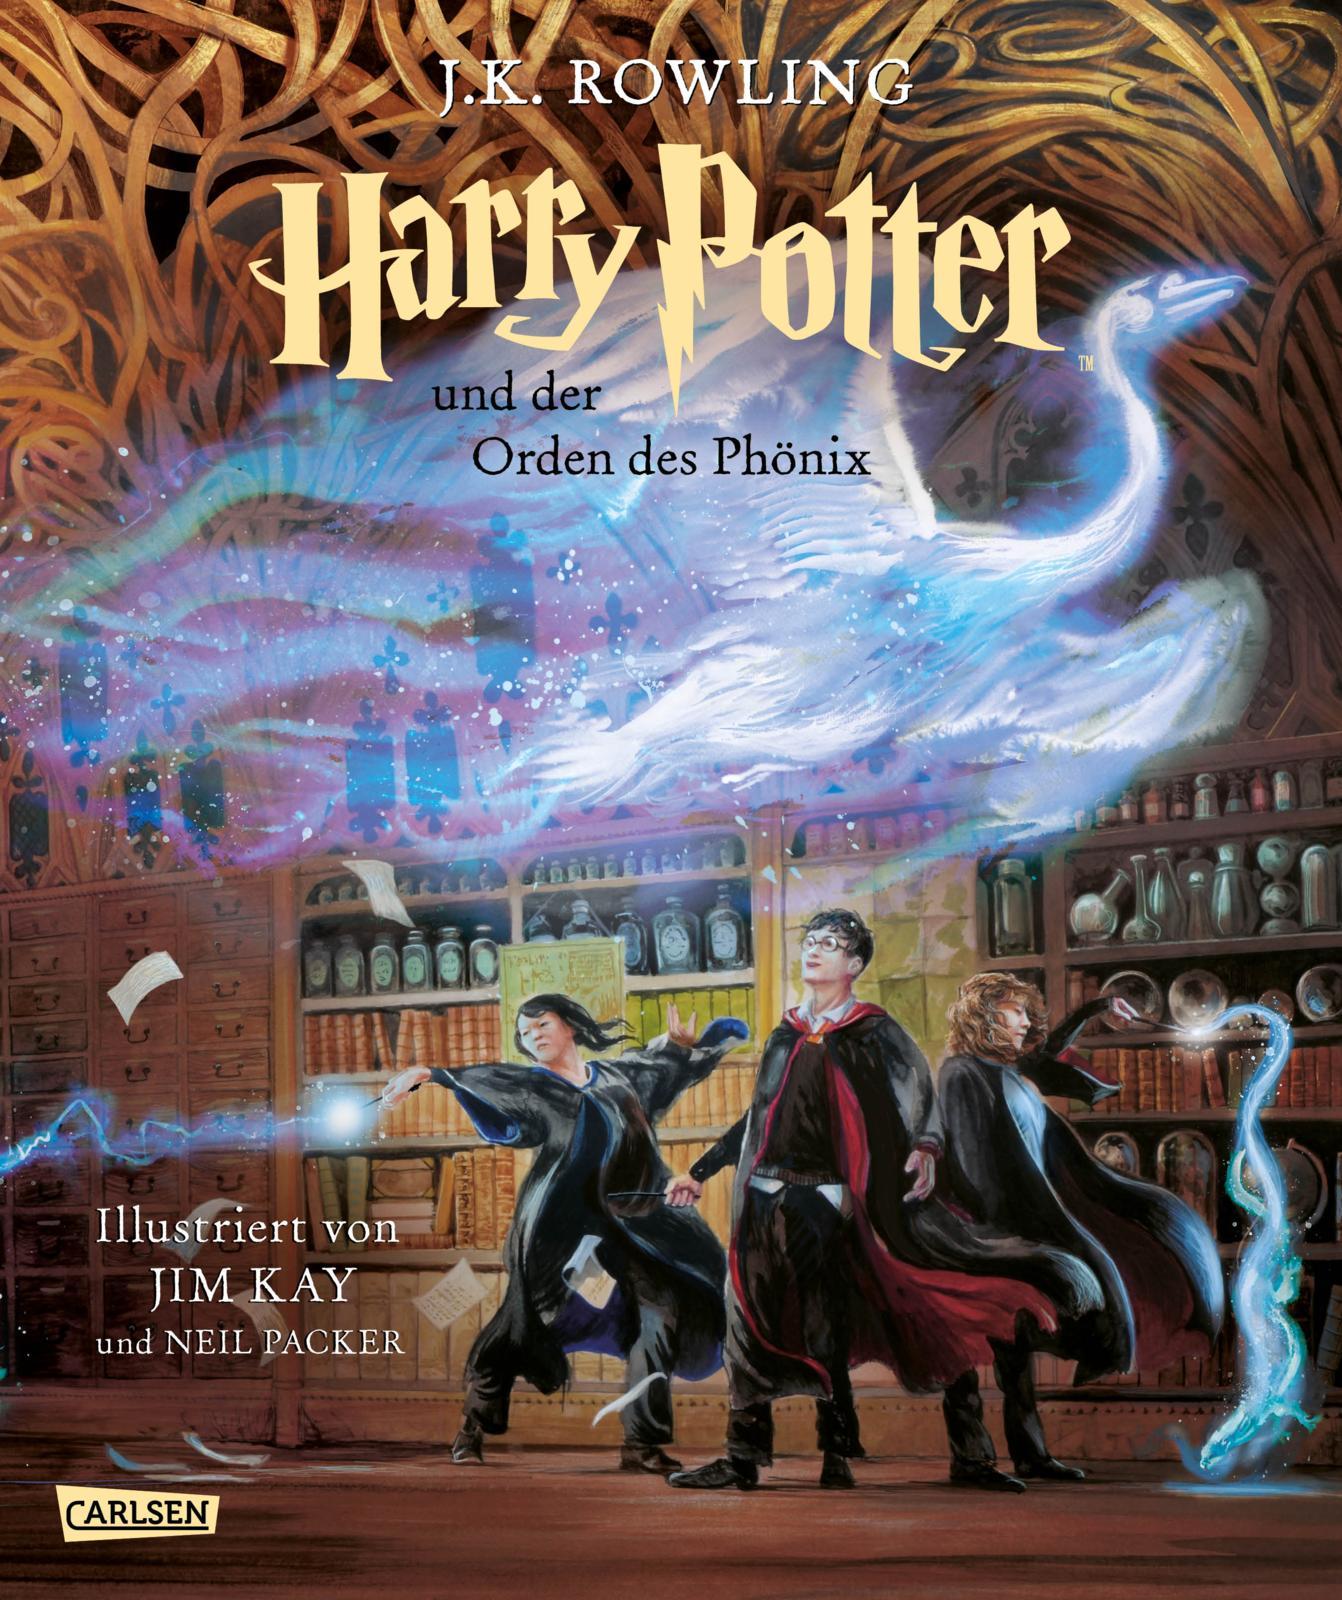 Harry Potter und der Orden des Phönix (farbig illustrierte Schmuckausgabe) (Harry Potter 5) Vierfarbig illustrierte Ausgabe mit großformatigen Bildern und Lesebändchen - der Kinderbuch-Klassiker zum Vorlesen